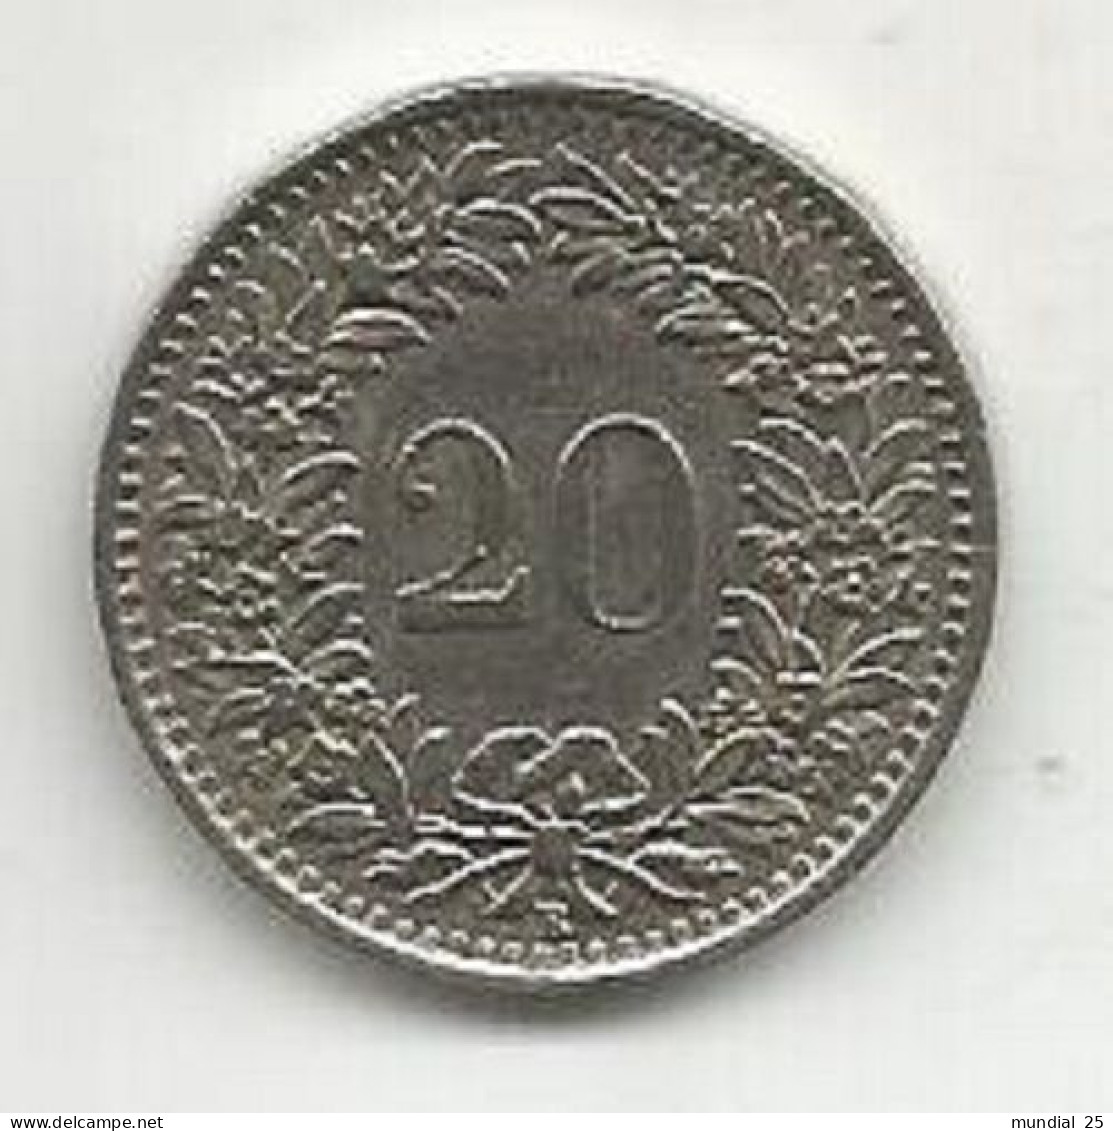 SWITZERLAND 20 RAPPEN 1959 B - 20 Centimes / Rappen